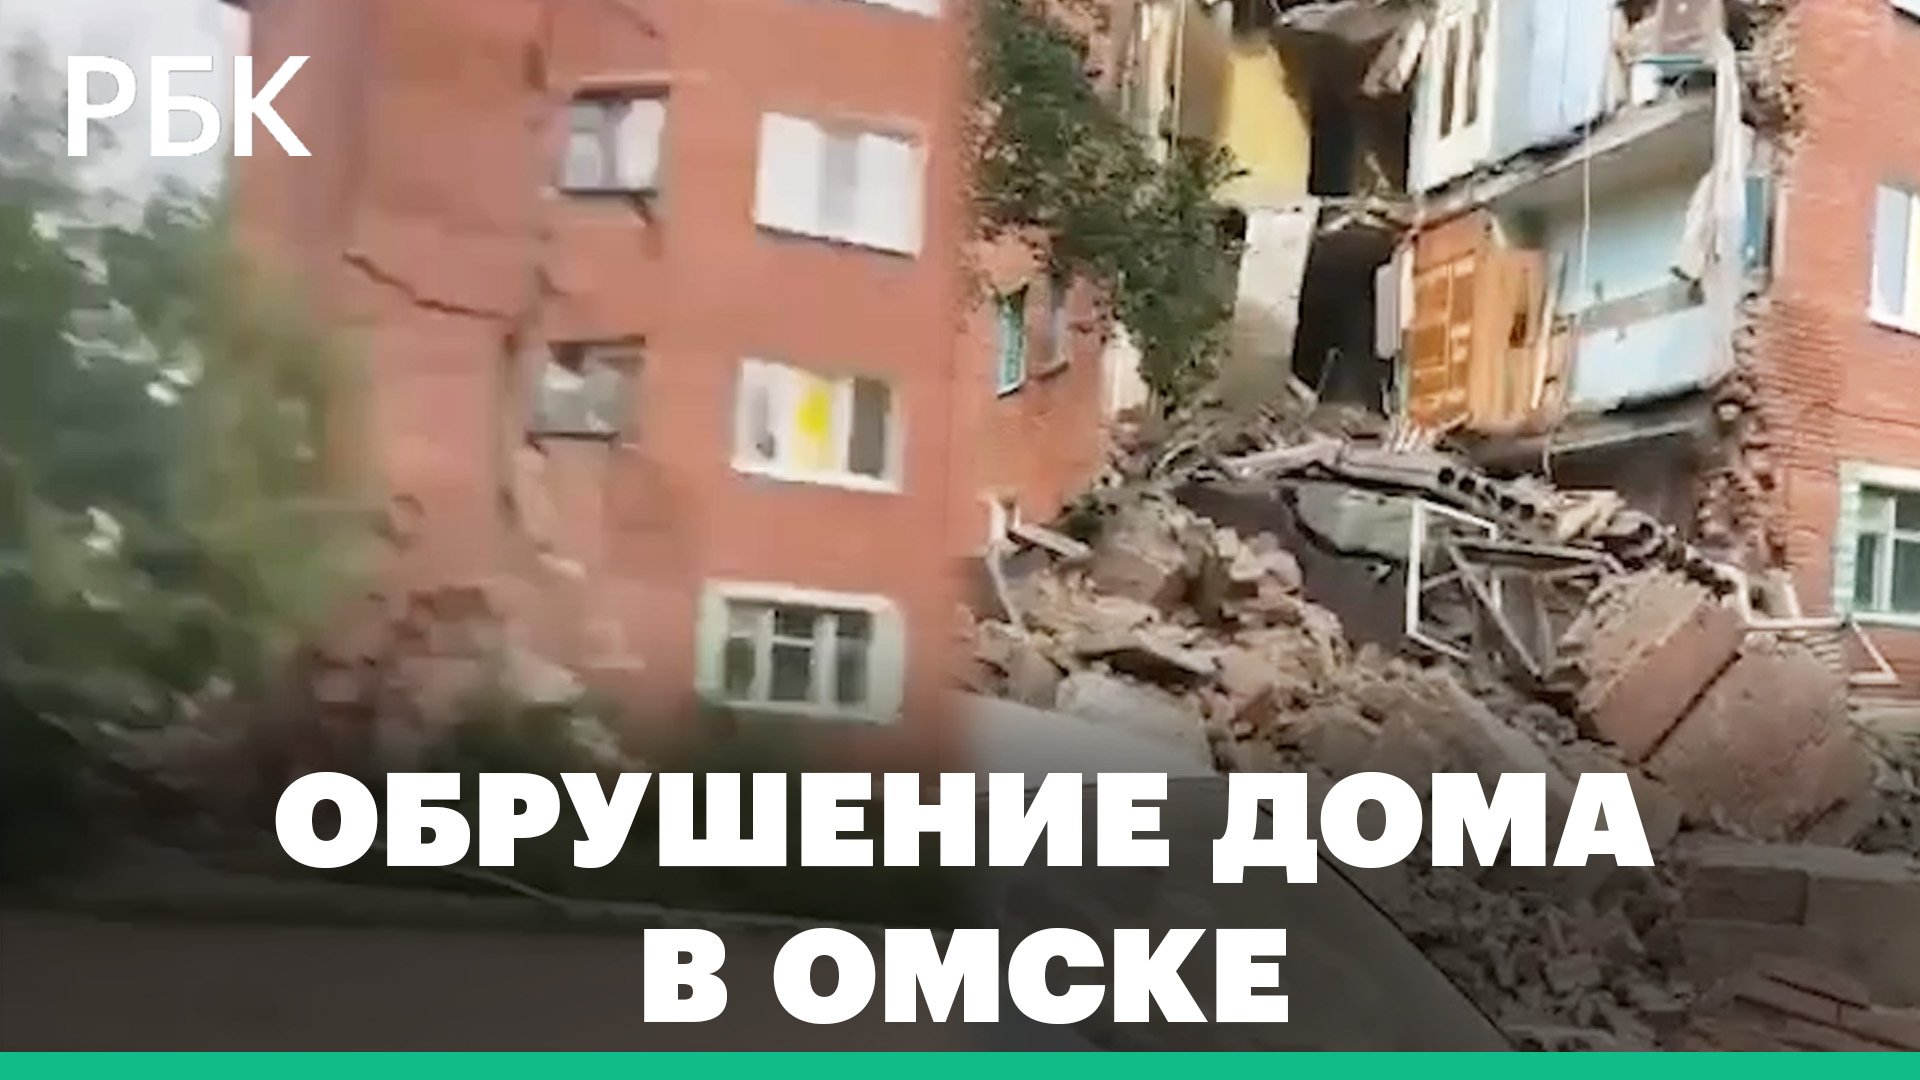 Что известно об обрушении пятиэтажного жилого дома в Омске. Видео спасательной операции